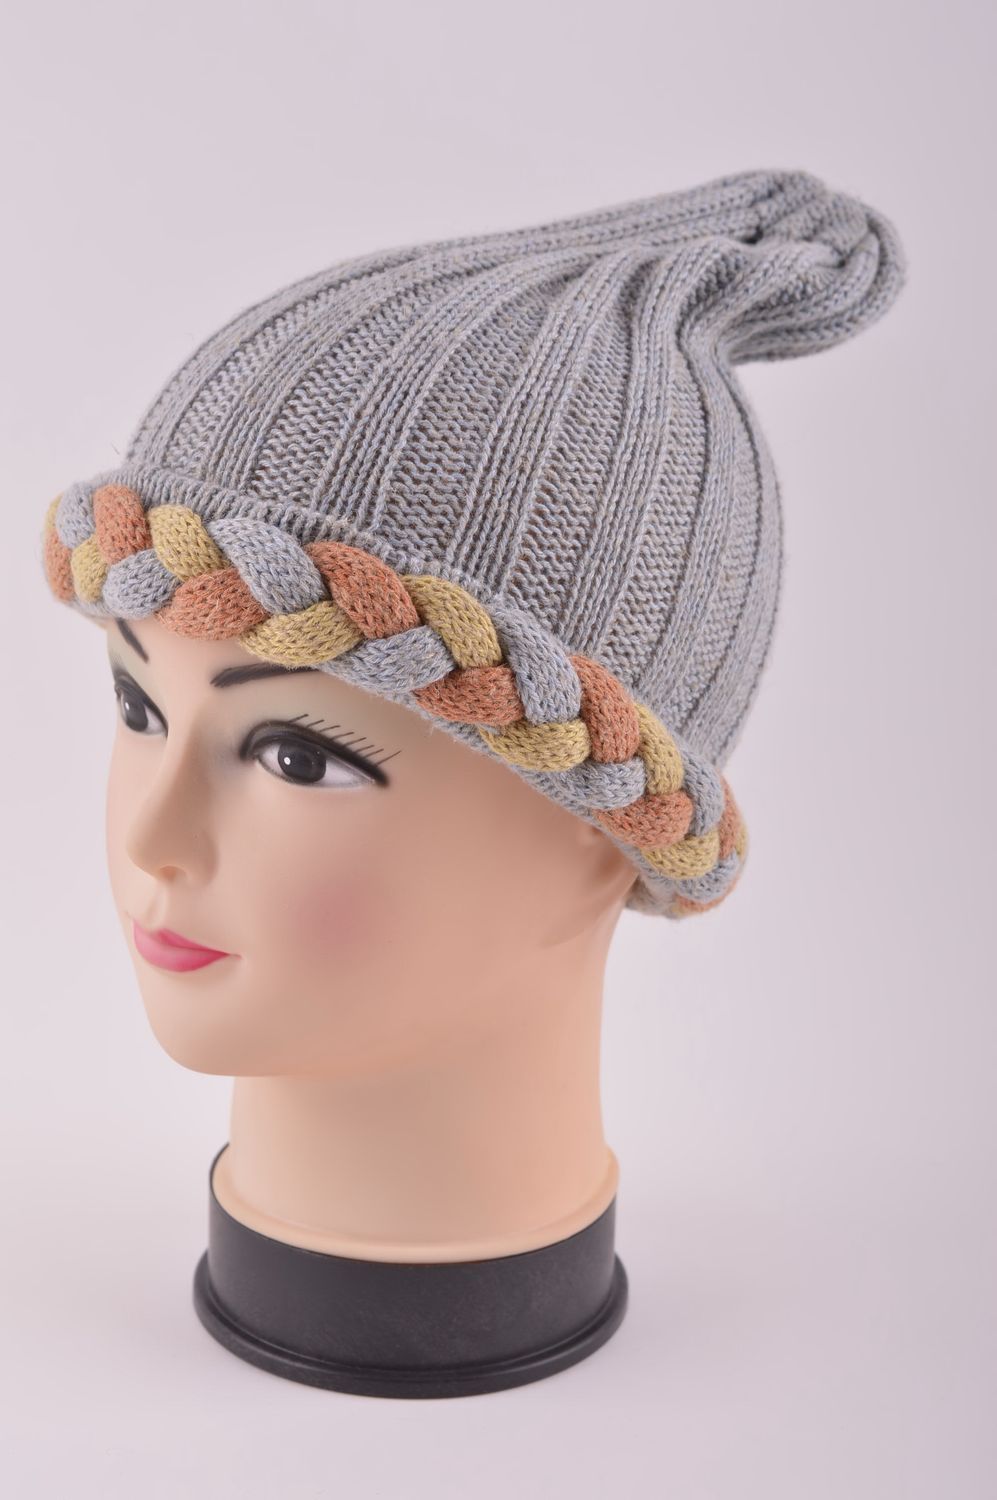 Handmade winter hat women hat knitted hat warm winter hat warm accessories photo 2